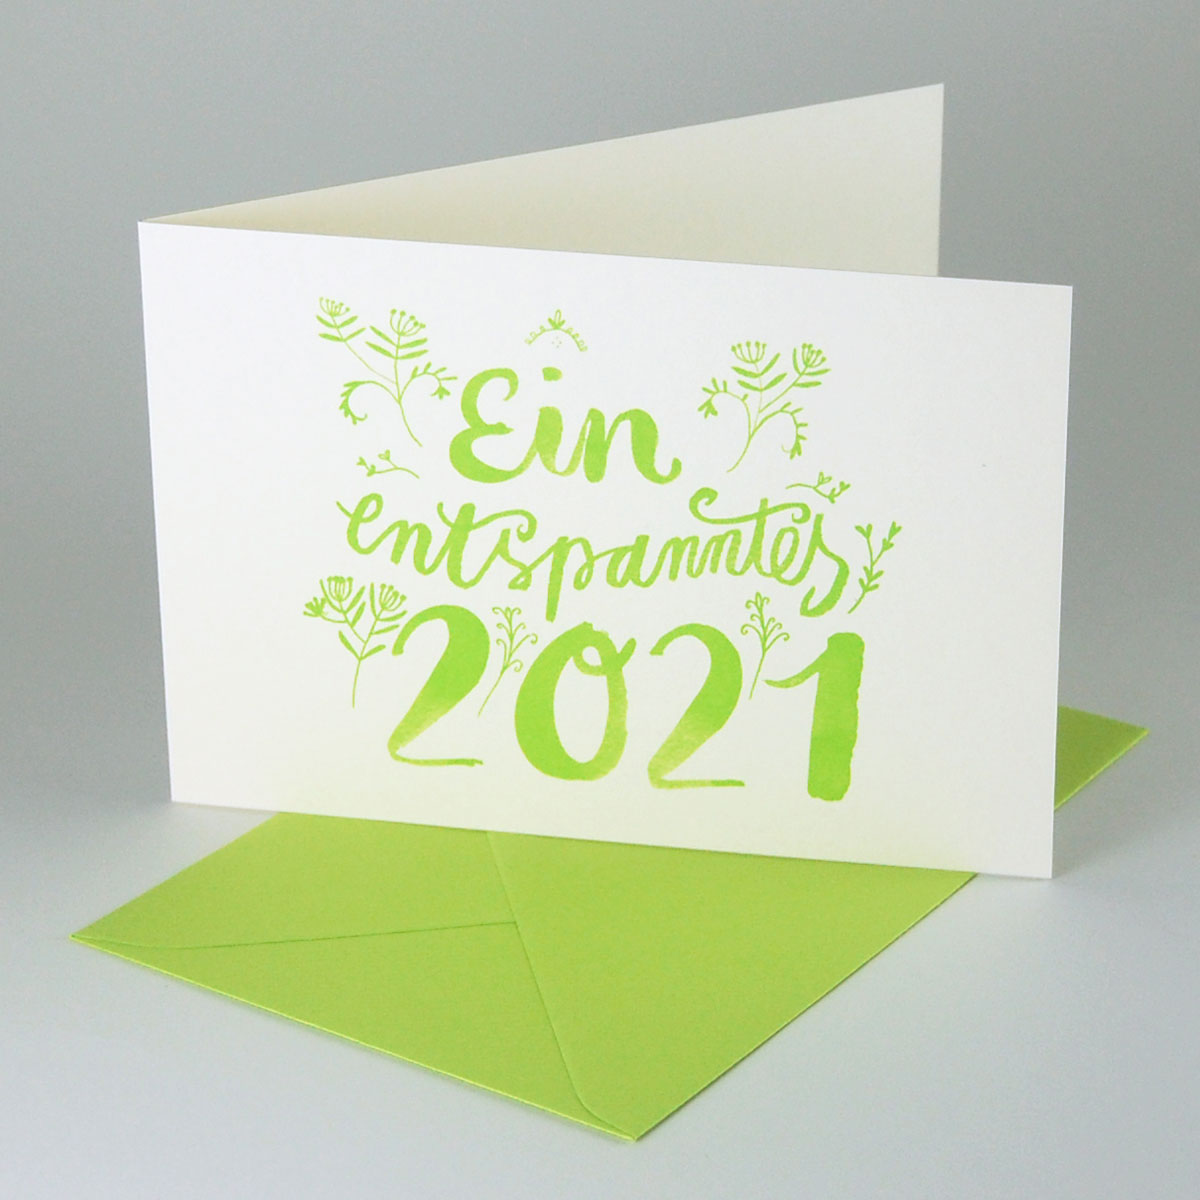 Ein entspanntes 2022, grün gedruckte Recycling-Neujahrskarten mit grünen Umschlägen